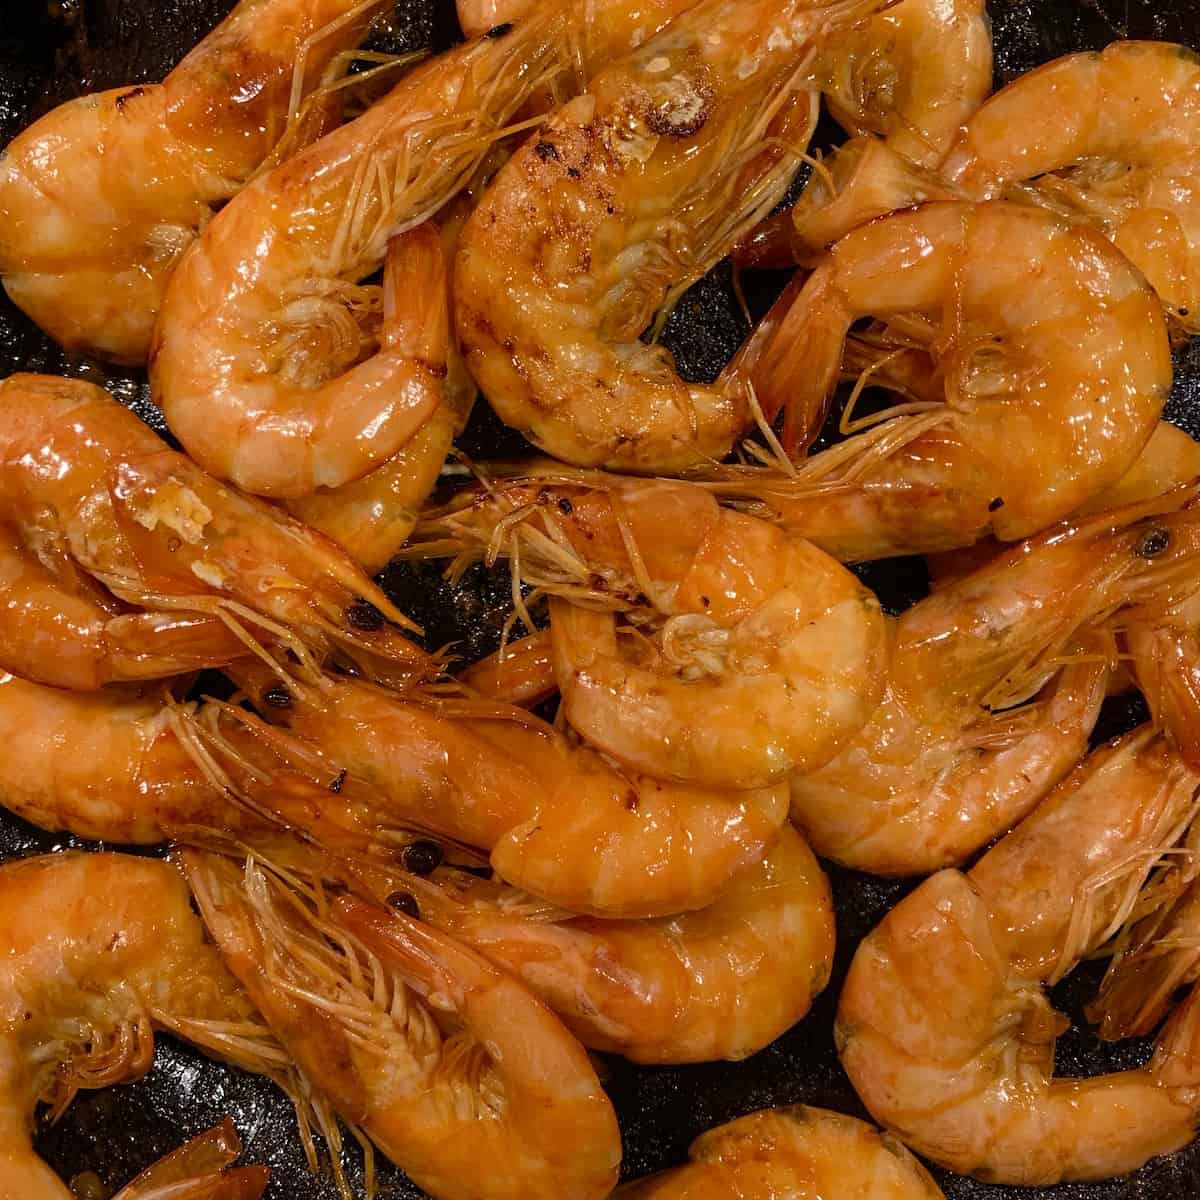 Caramelized Shrimps on a black plate.